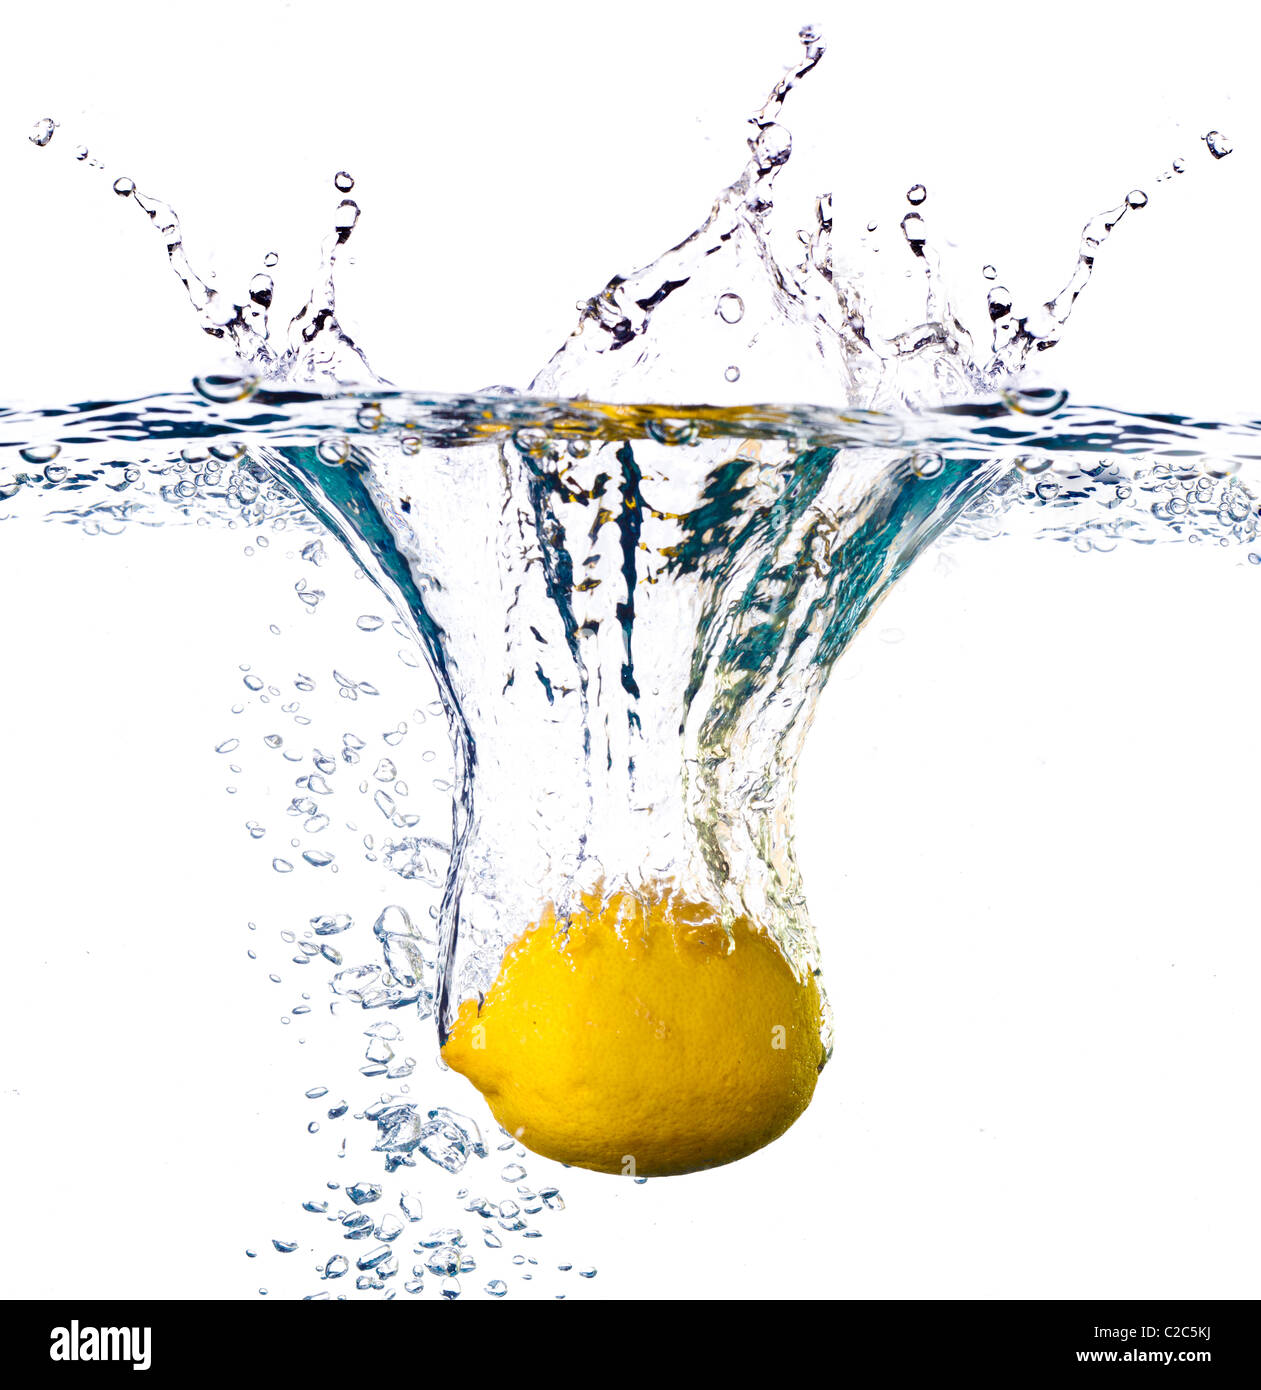 Le citron est tombé dans l'eau avec splash isolated on white Banque D'Images